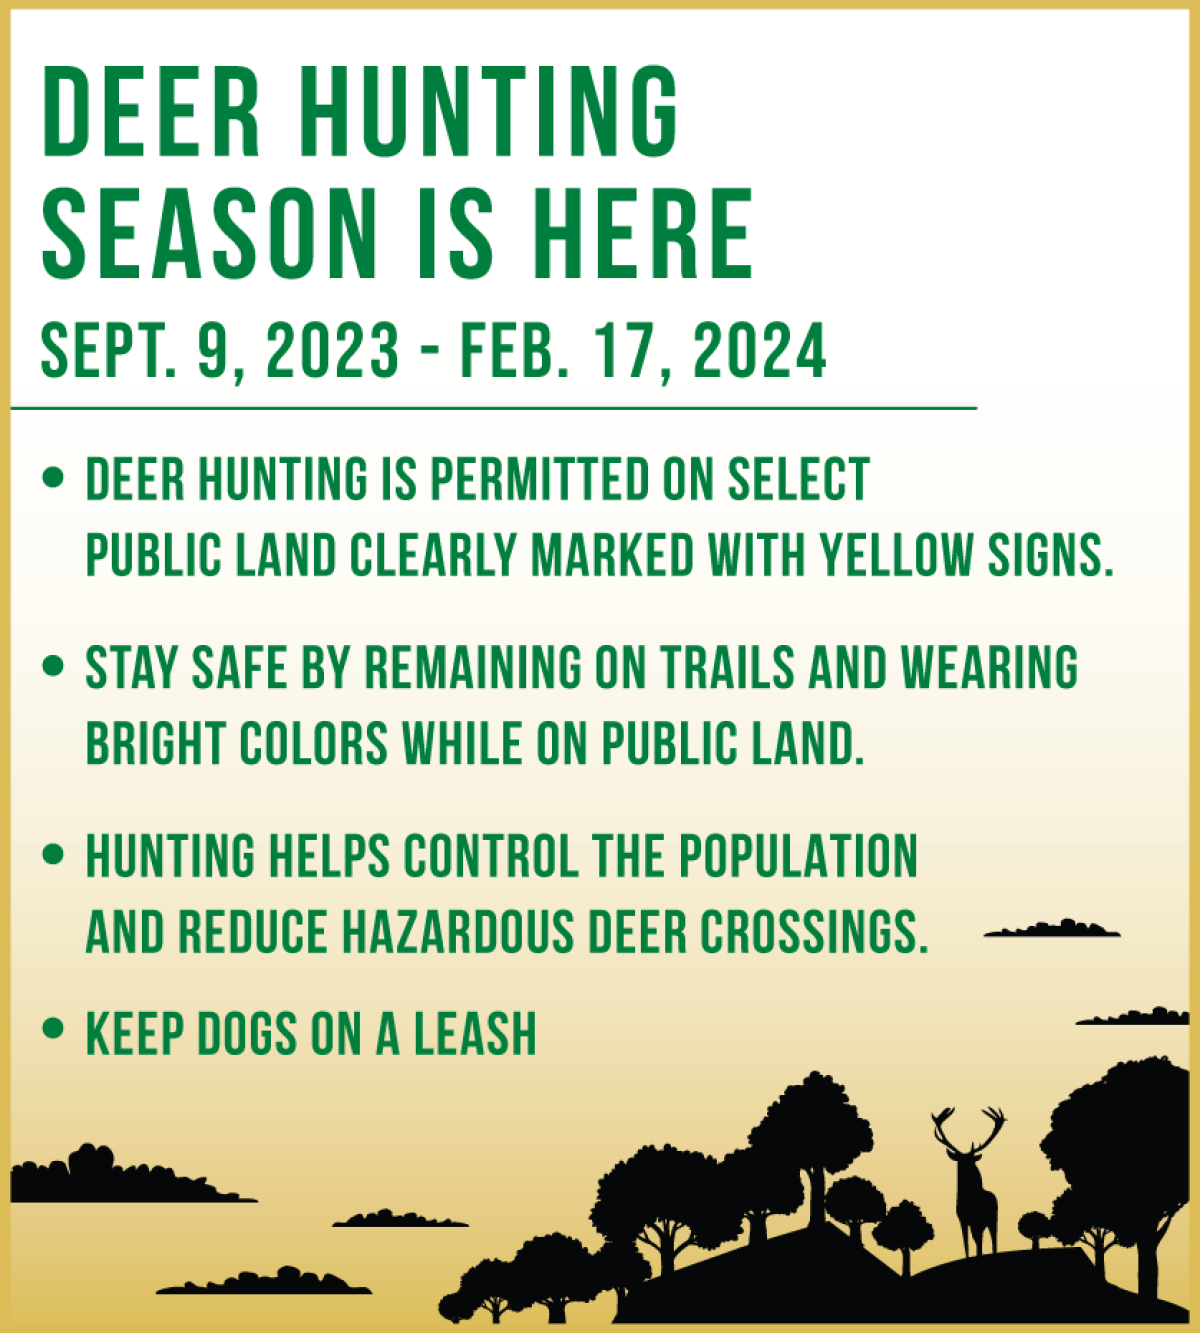 Deer Hunting Reminders Image 2023